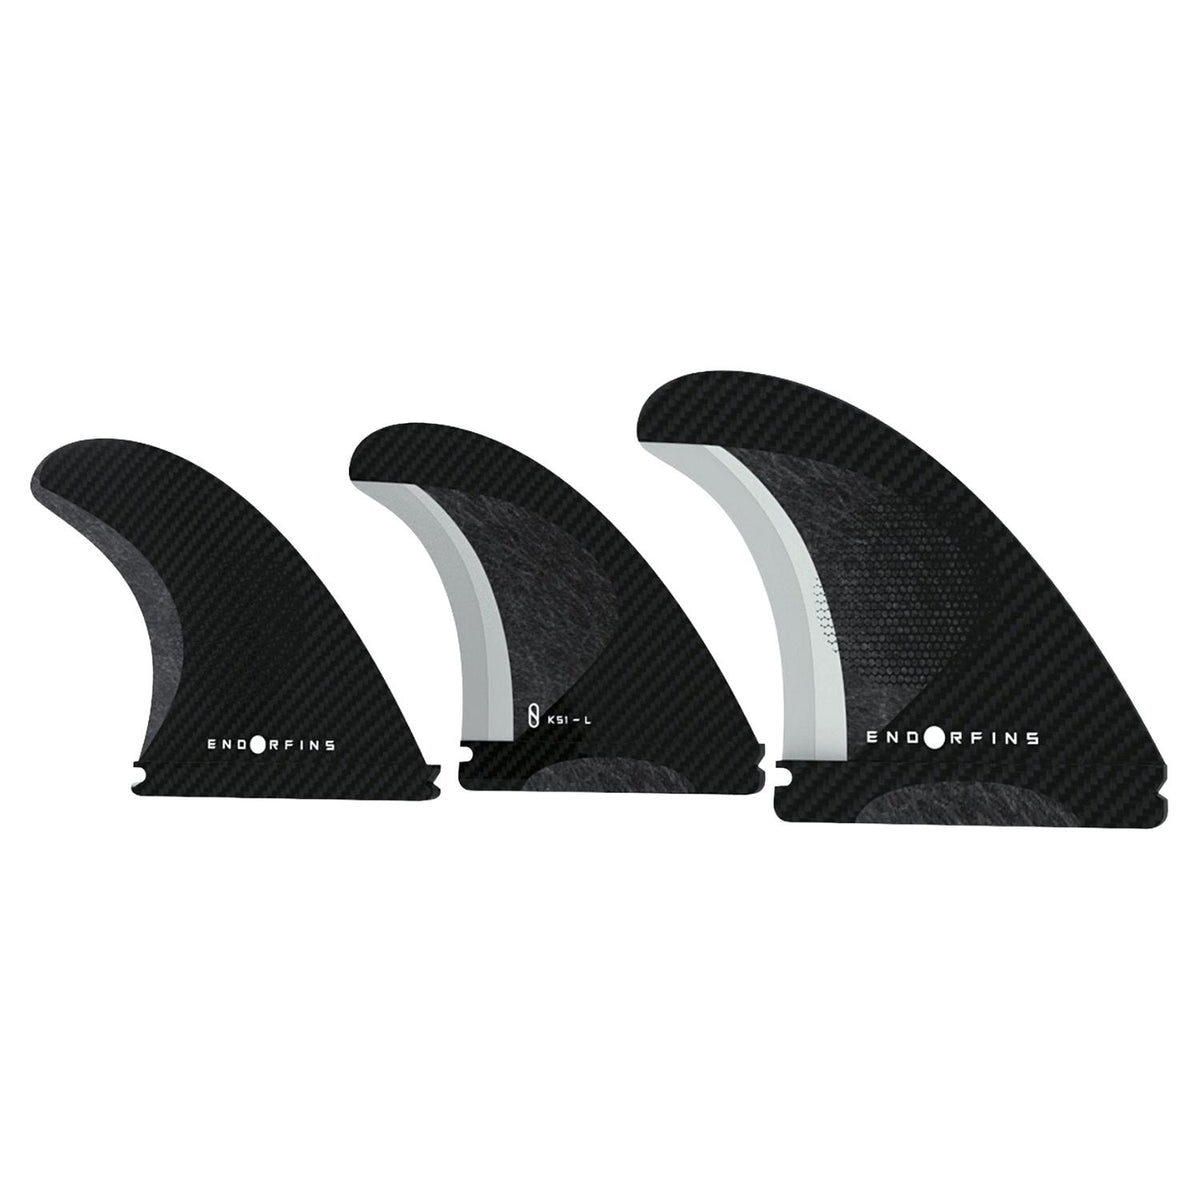 Slater Designs Endorfins Large Futures Compatible Thruster Surfboard Fins Set - Black/Black